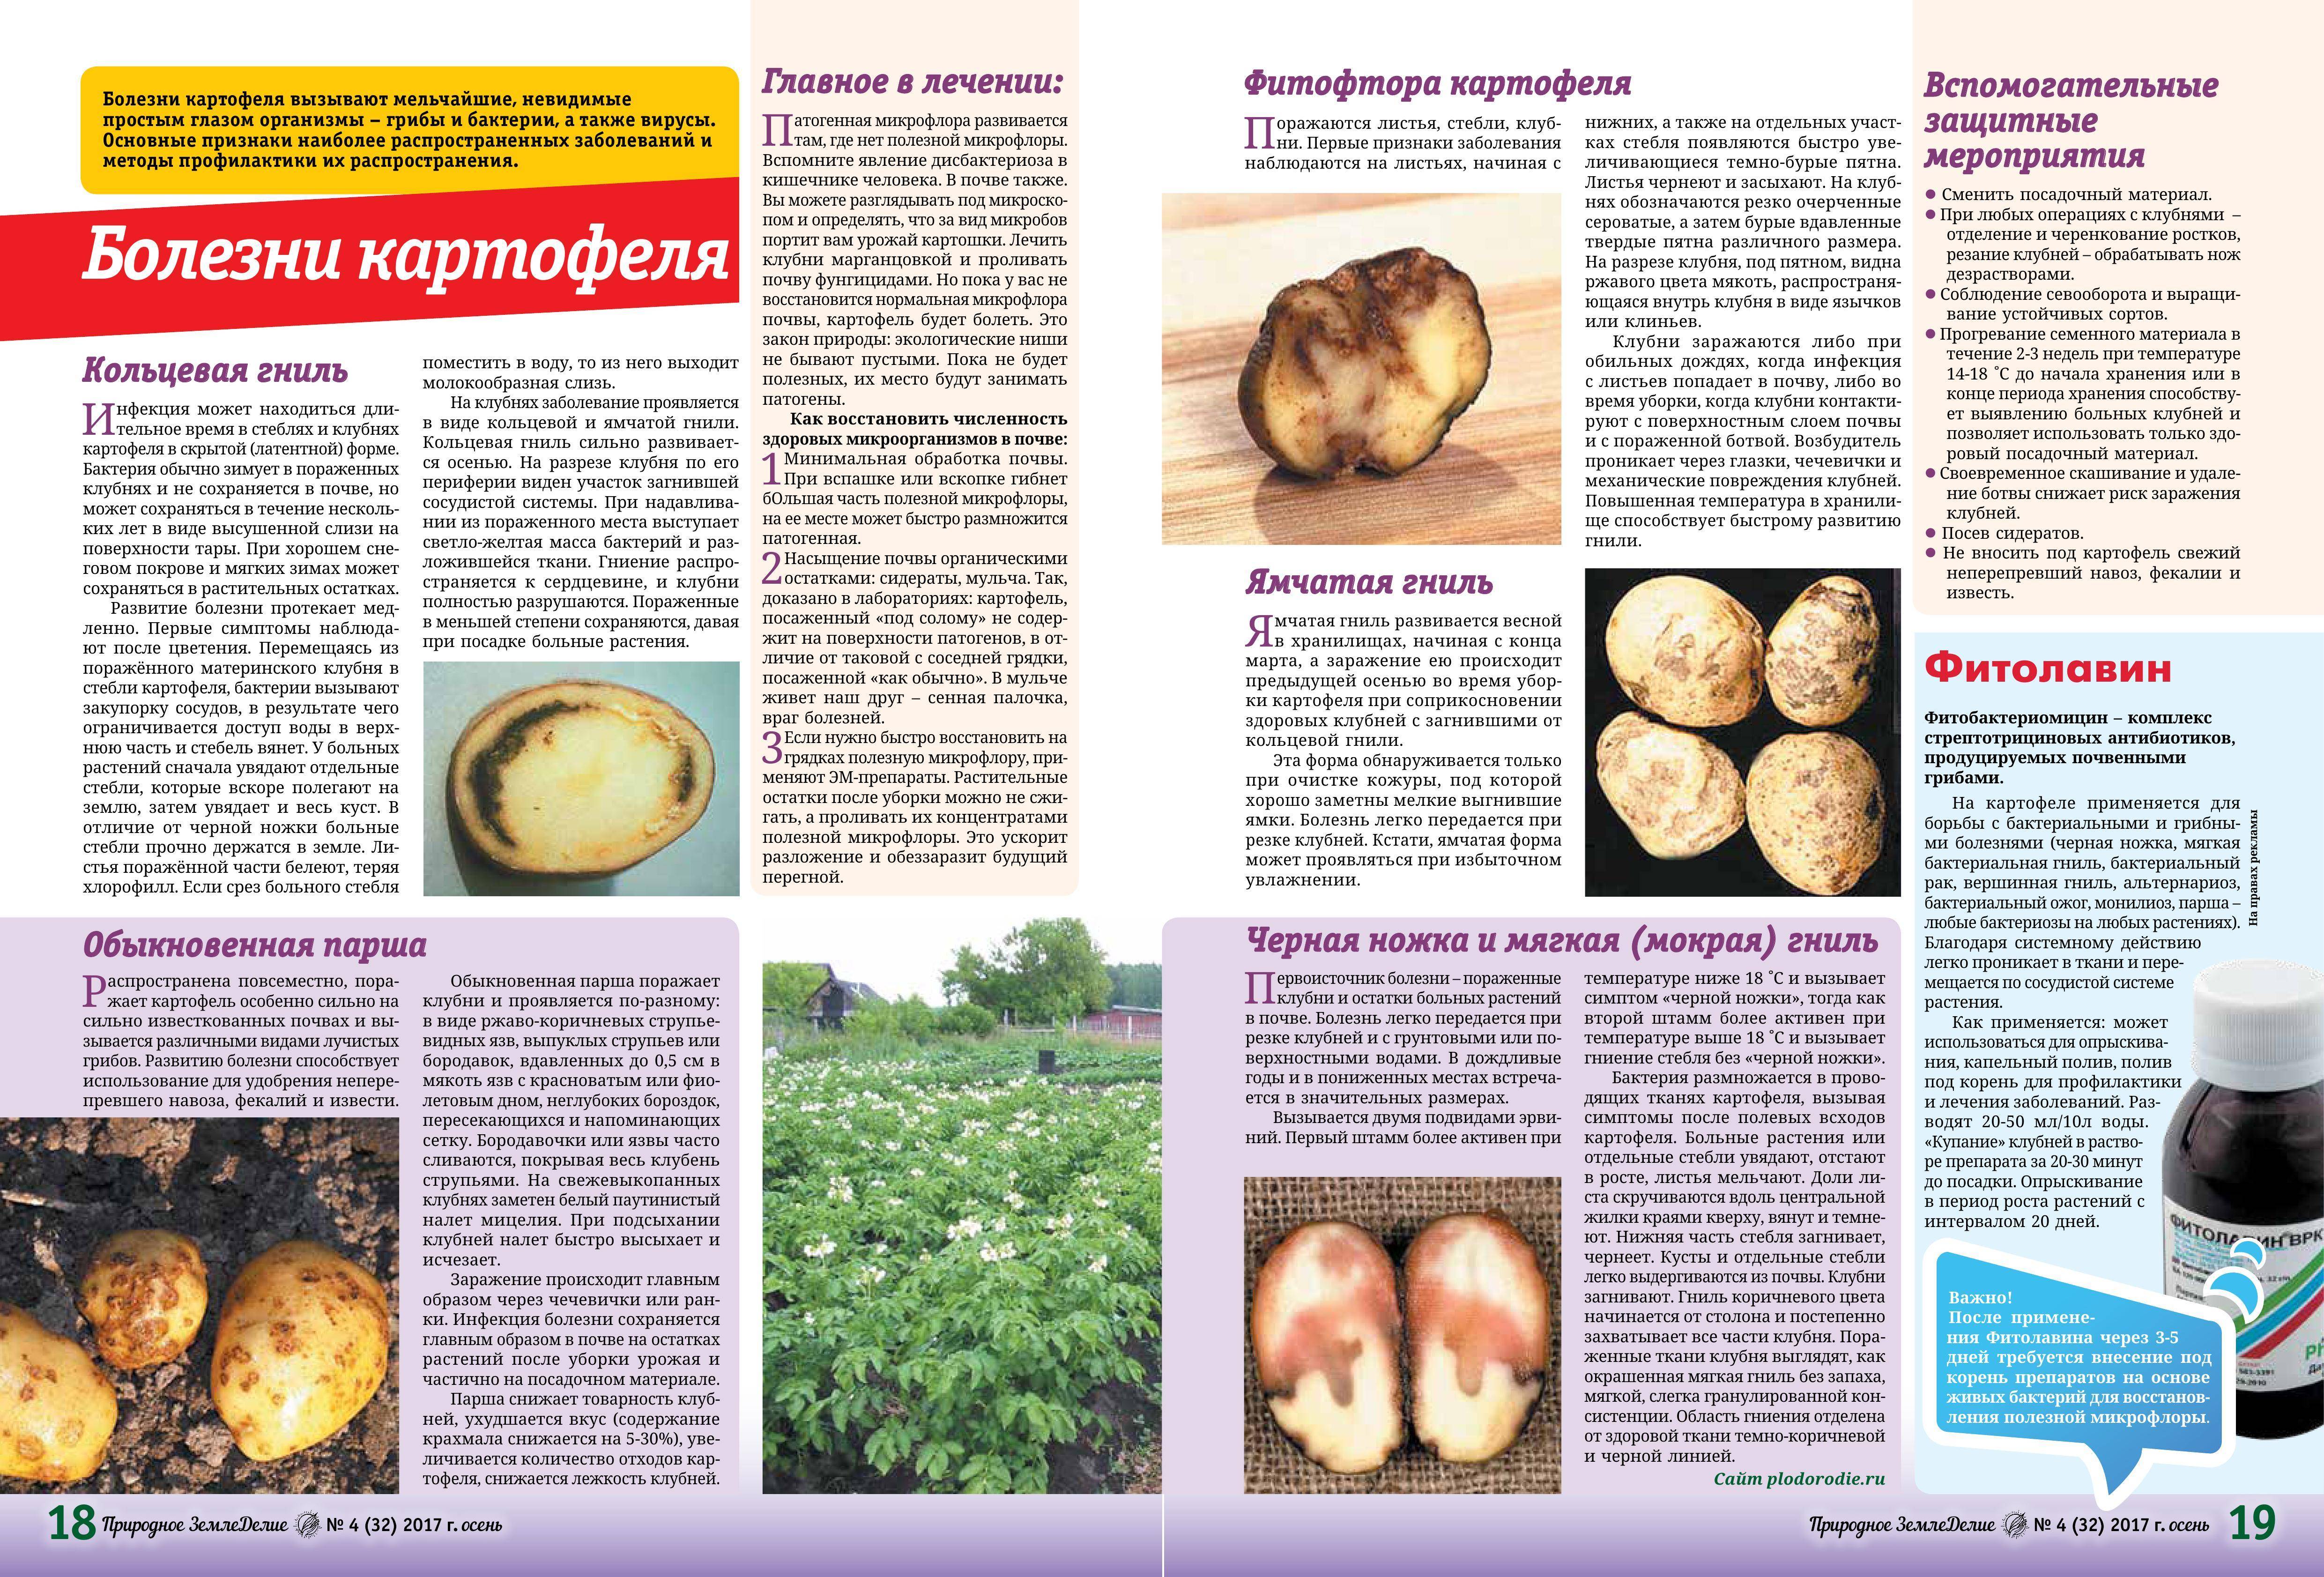 Вредители картофеля: описание и лечение, борьба с ними с фото